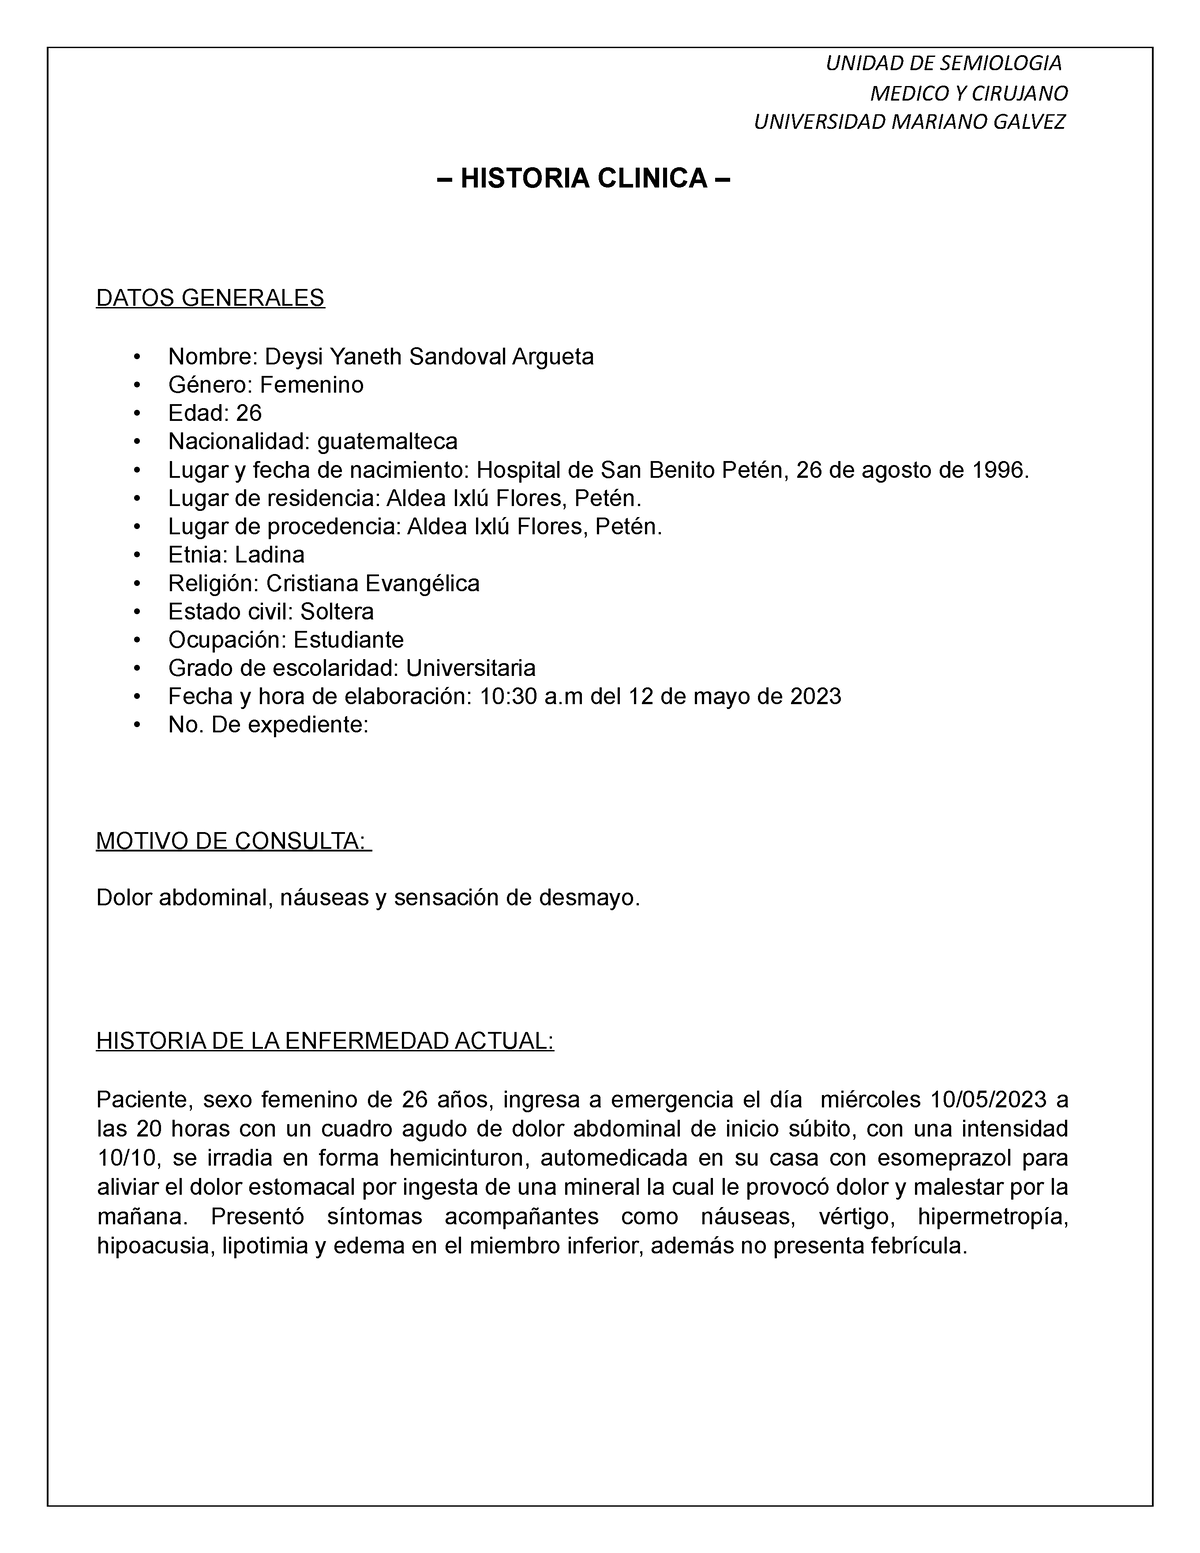 Historia Clinica En Proceso Medico Y Cirujano Universidad Mariano Galvez Historia Clinica 3856